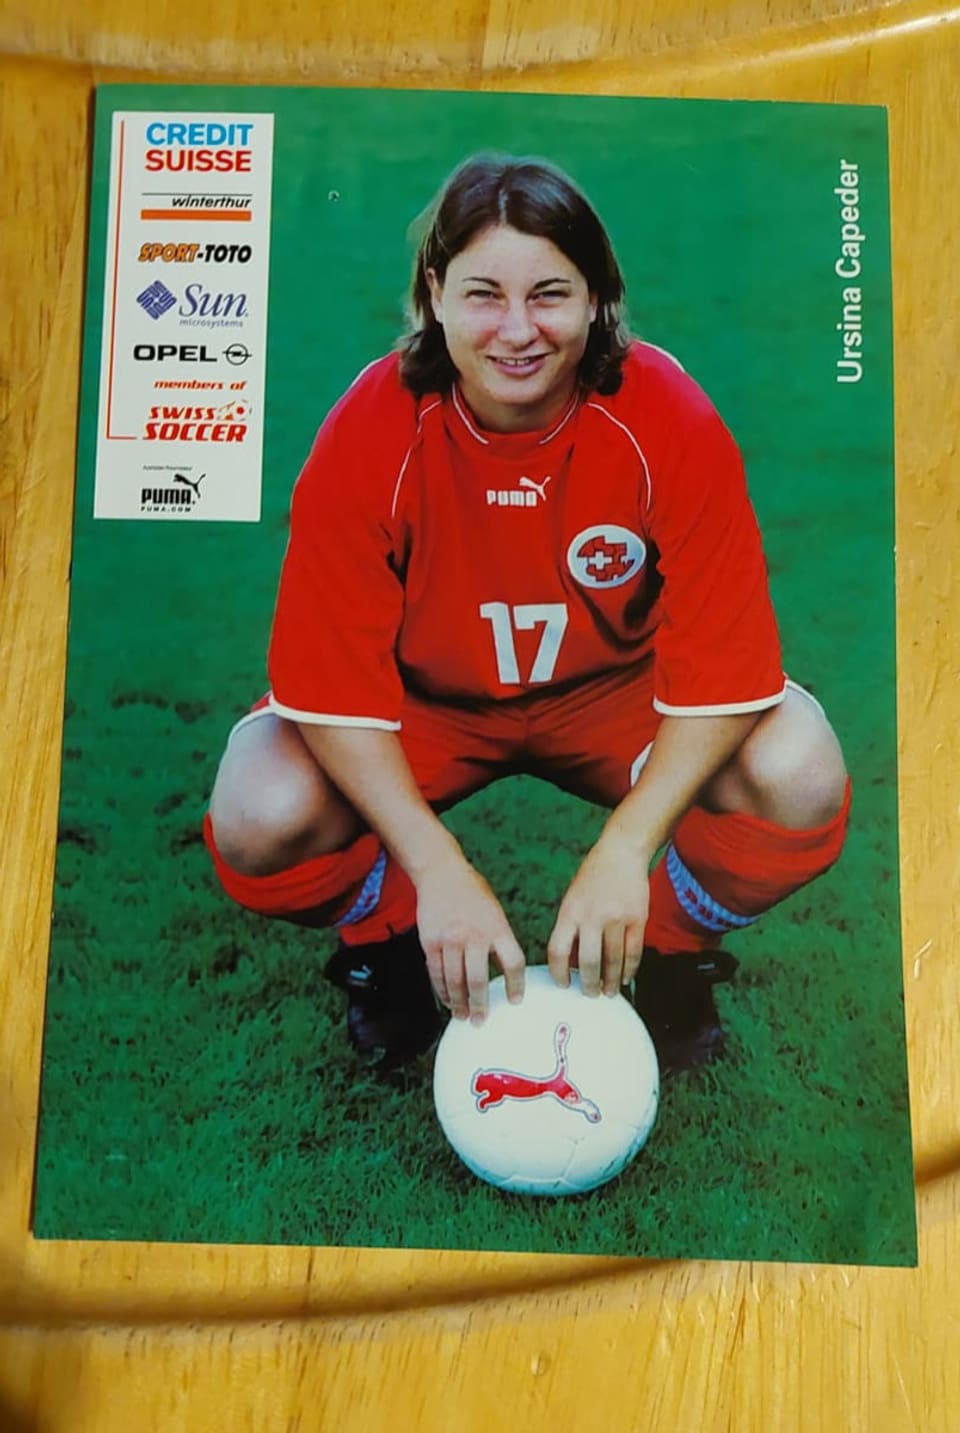 Autogrammkarte der Schweizer Frauenfussballmannschaft.